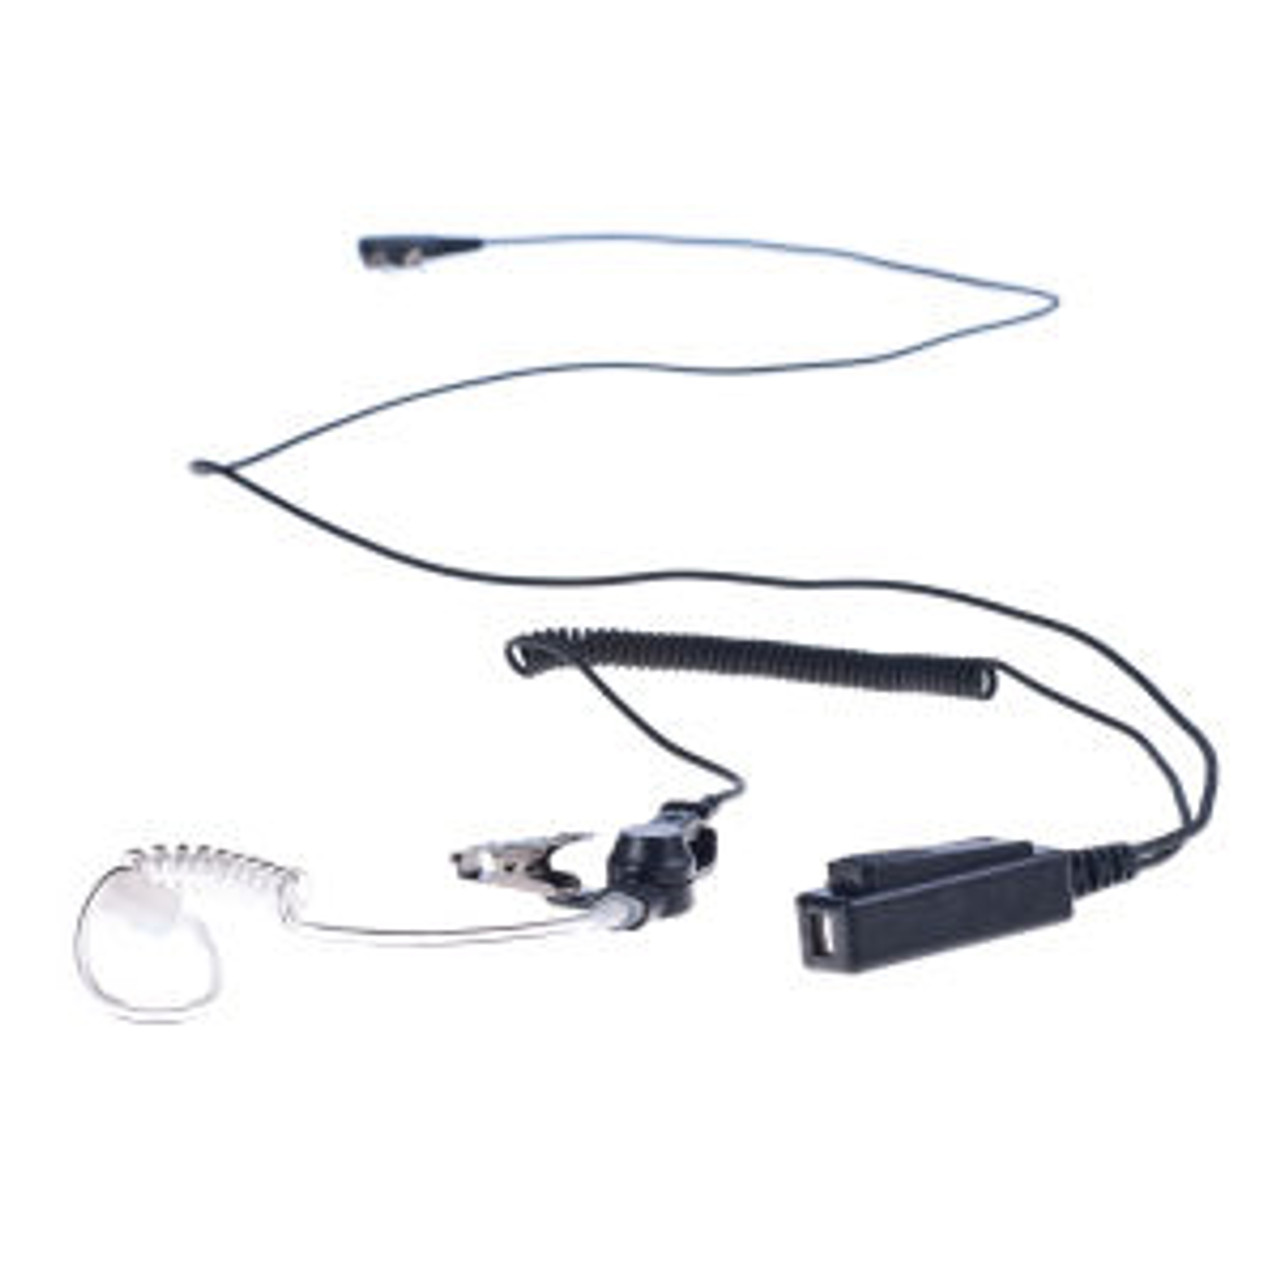 Harris P5350 1-Wire Surveillance Kit